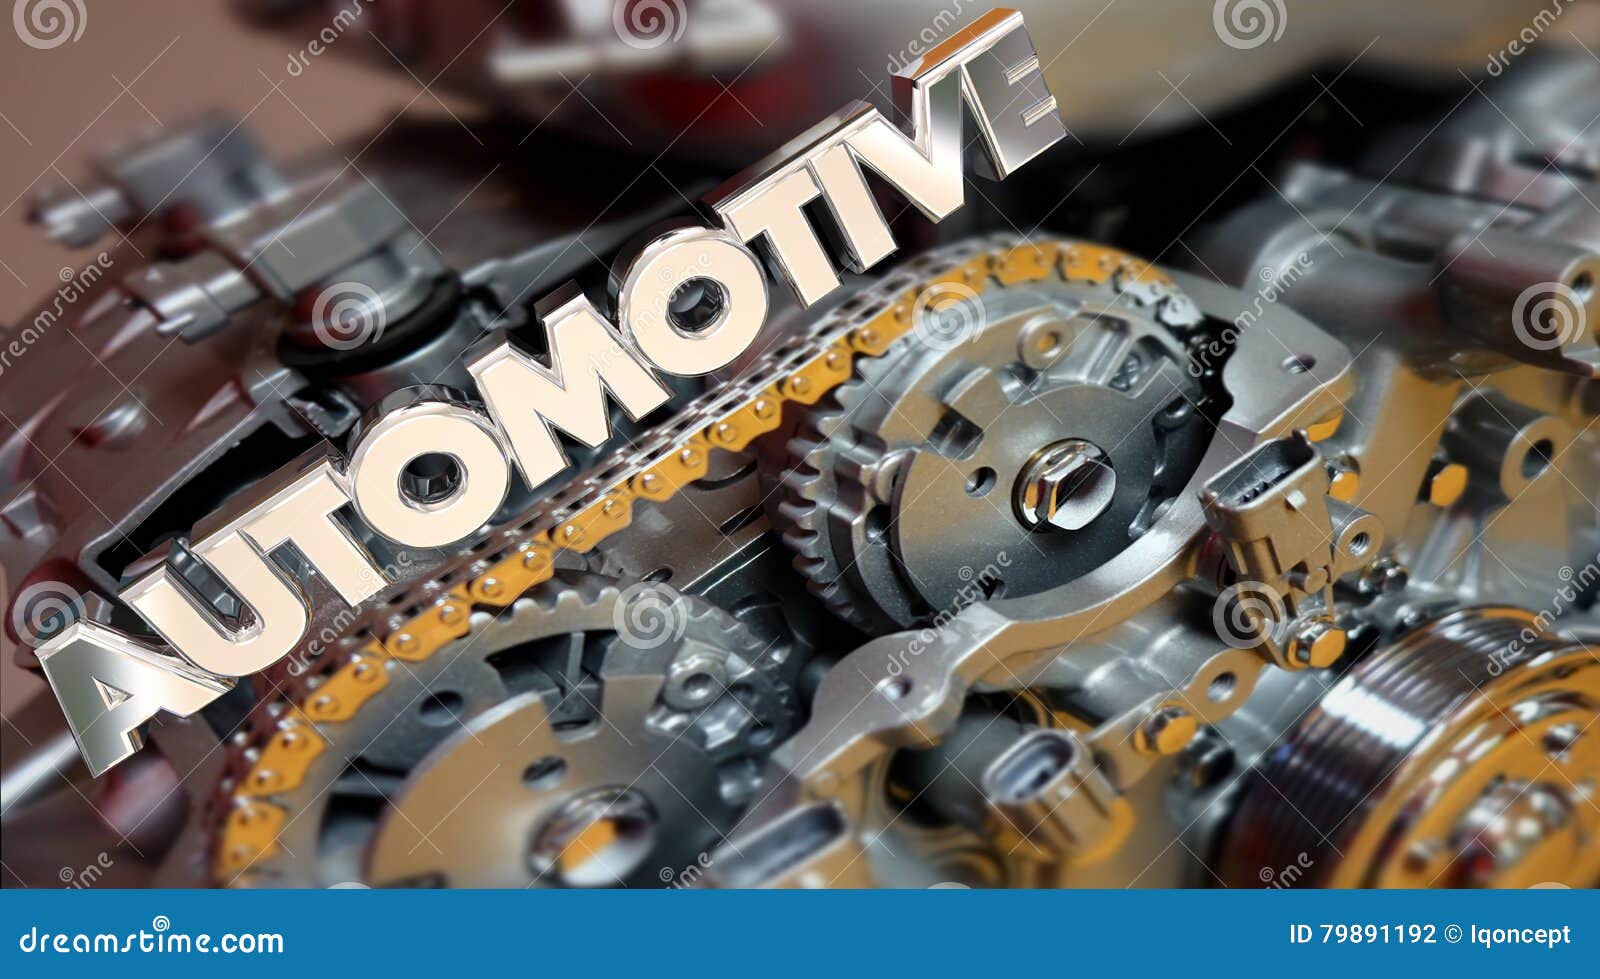 automotive engine powertrain car vehicle automobile